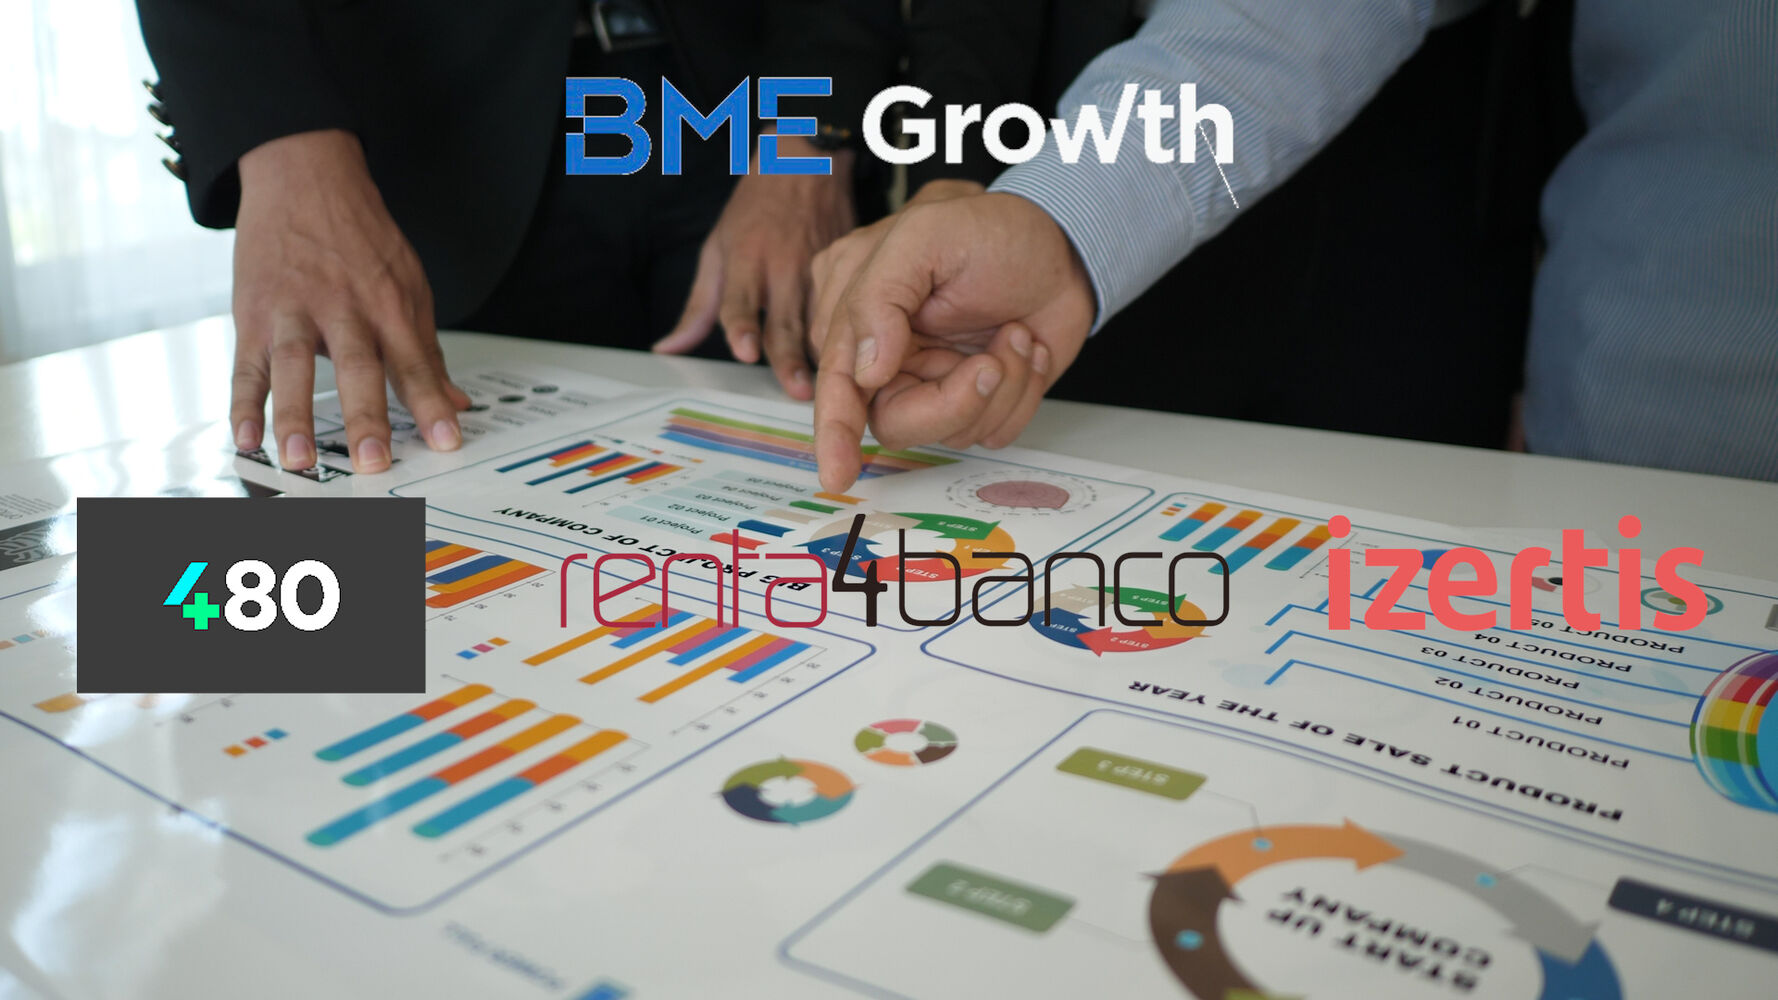 BME Growth: bondades de cotizar en el mercado las pymes